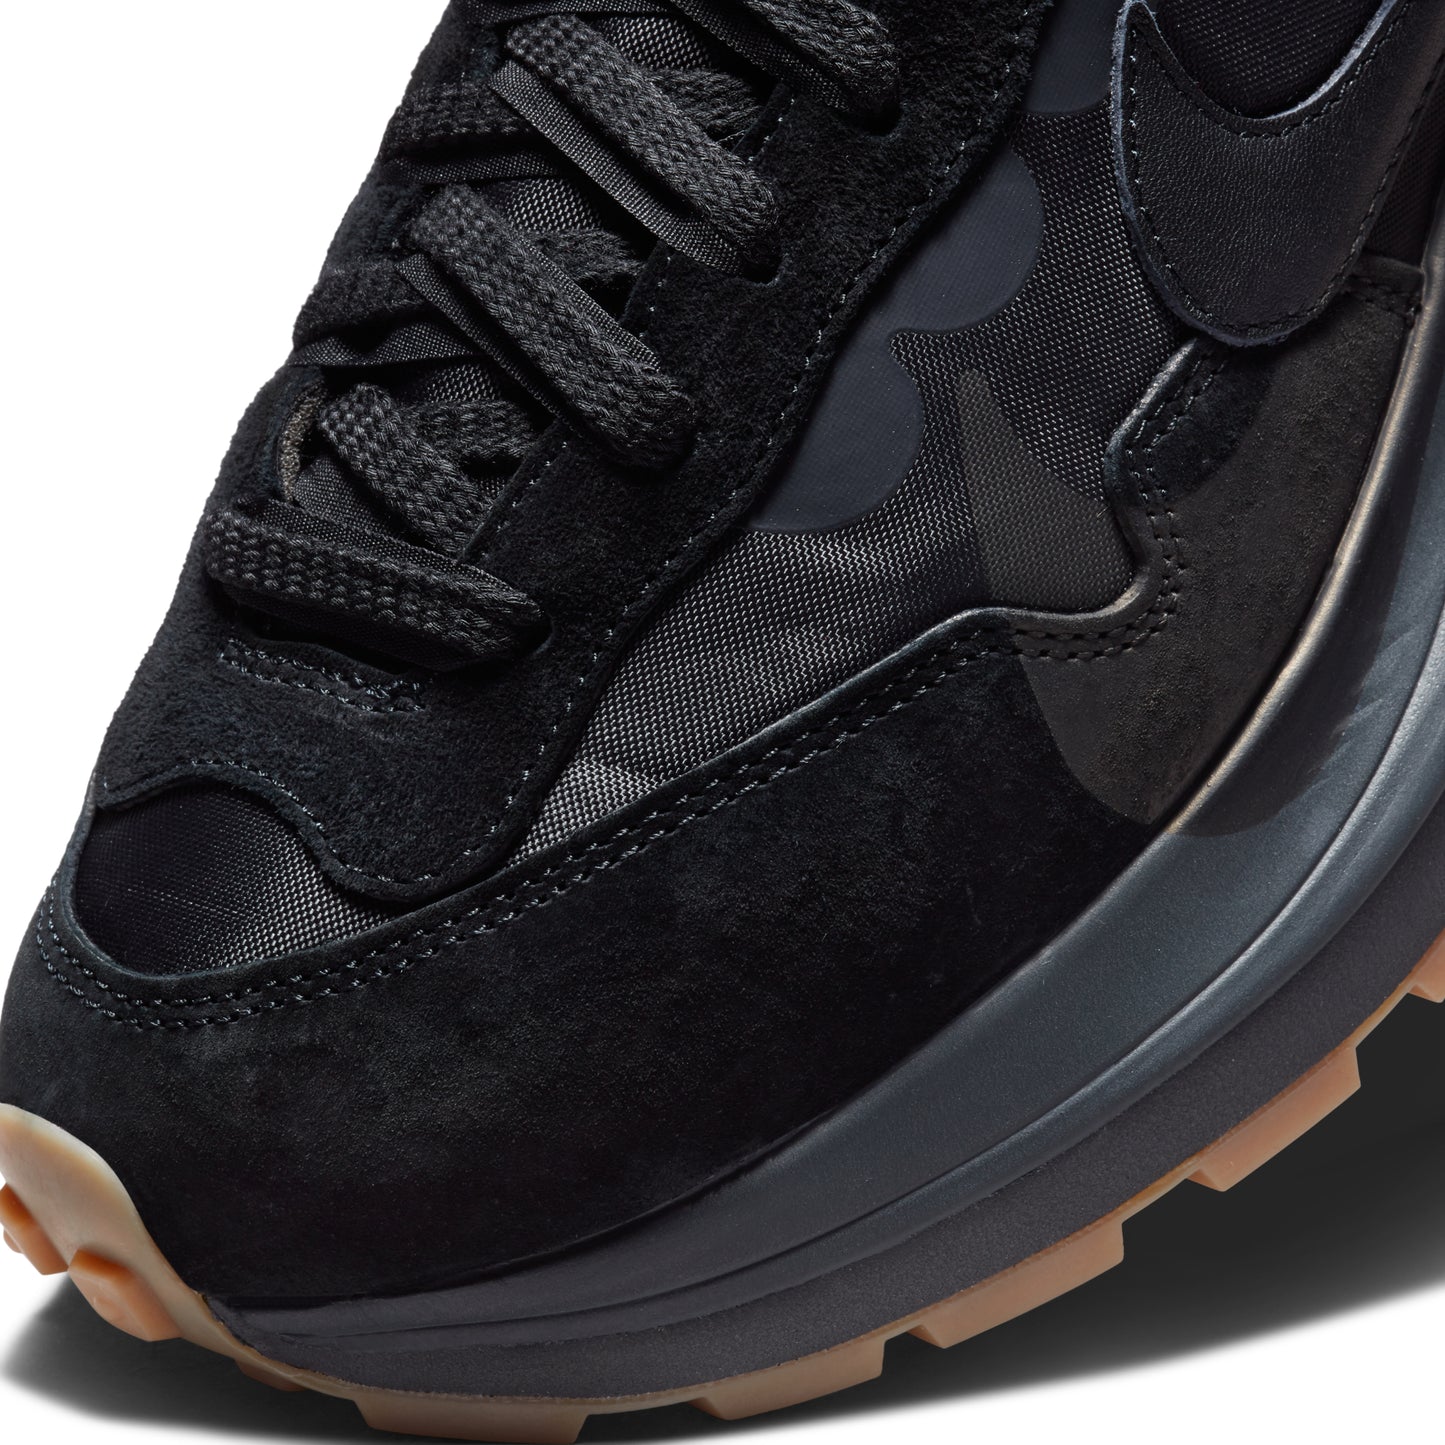 Nike x Sacai Vaporwaffle "Black Gum"